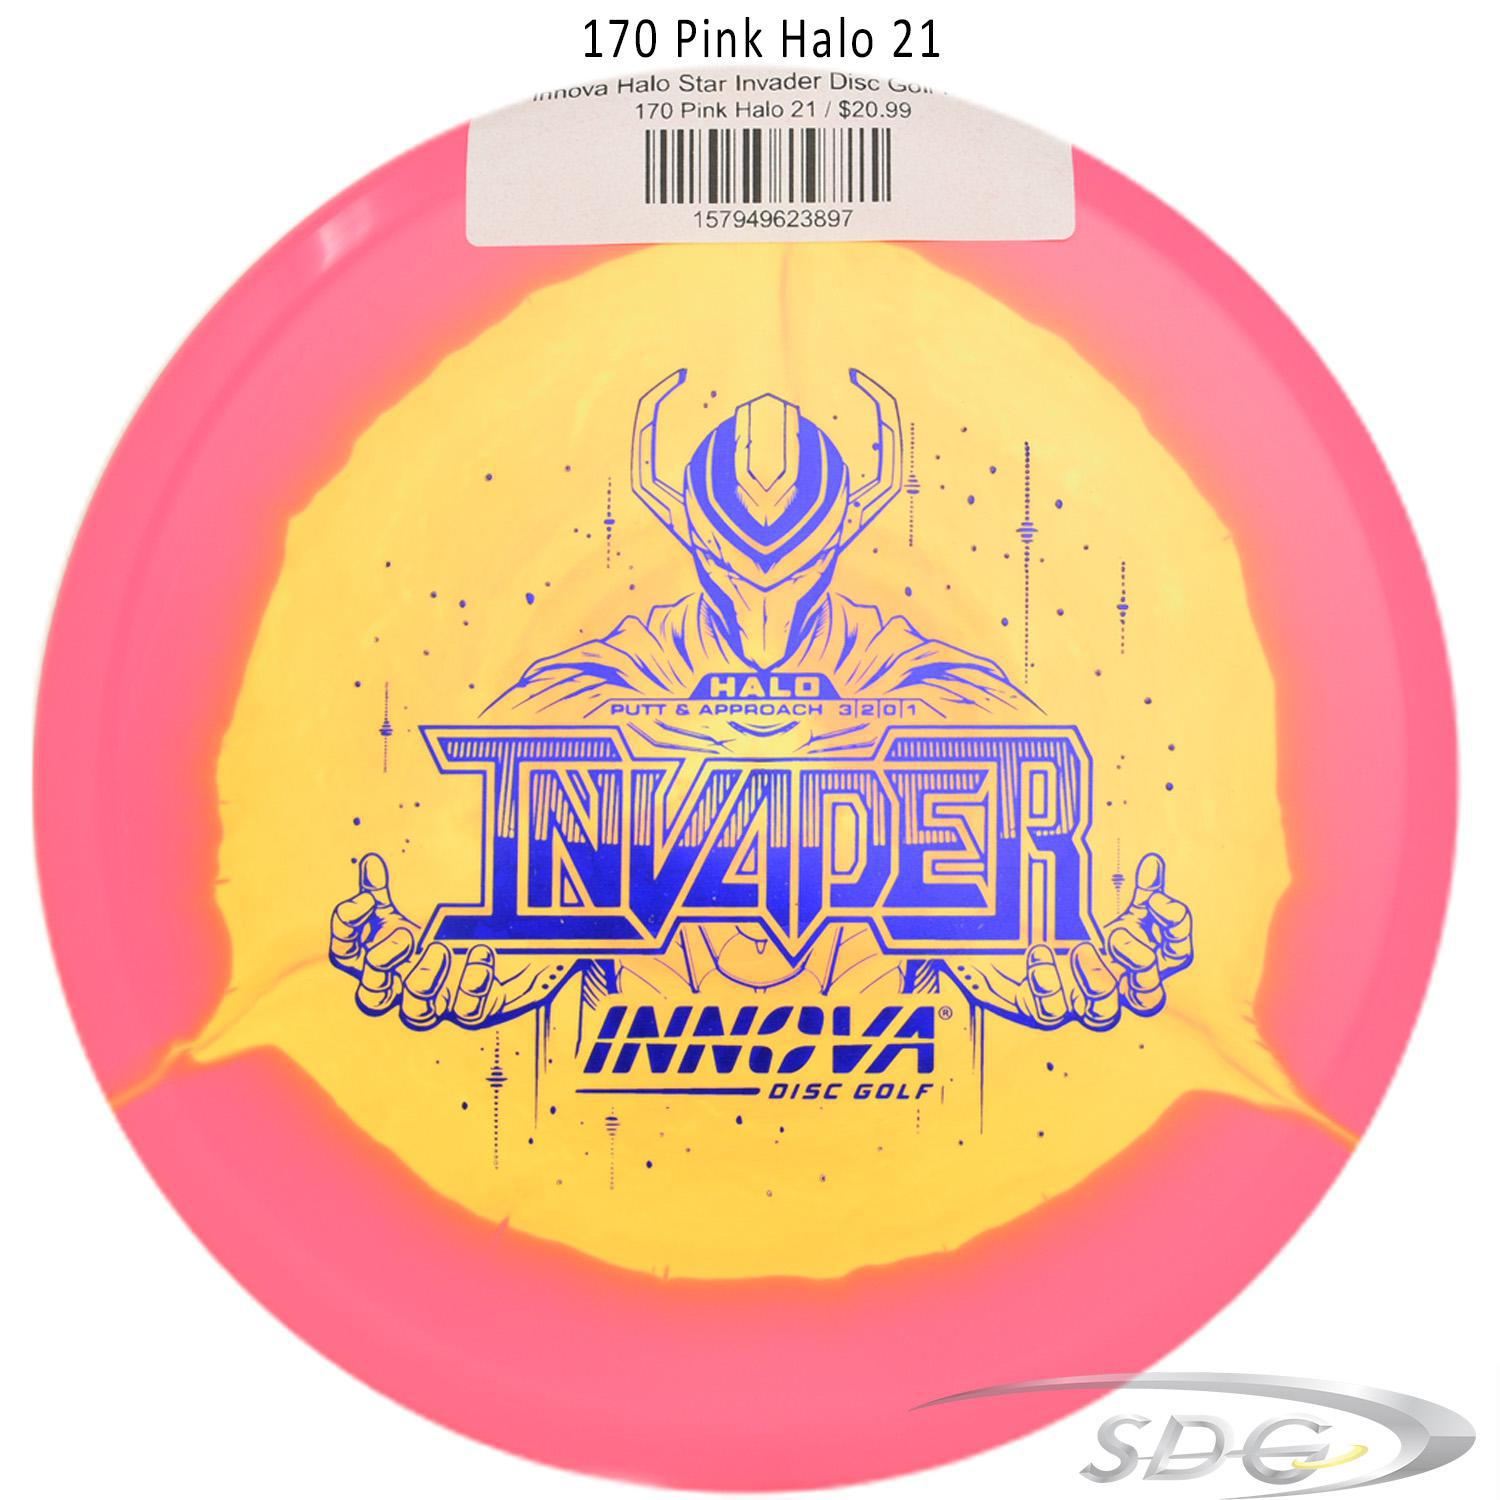 innova-halo-star-invader-disc-golf-putter 170 Pink Halo 21 